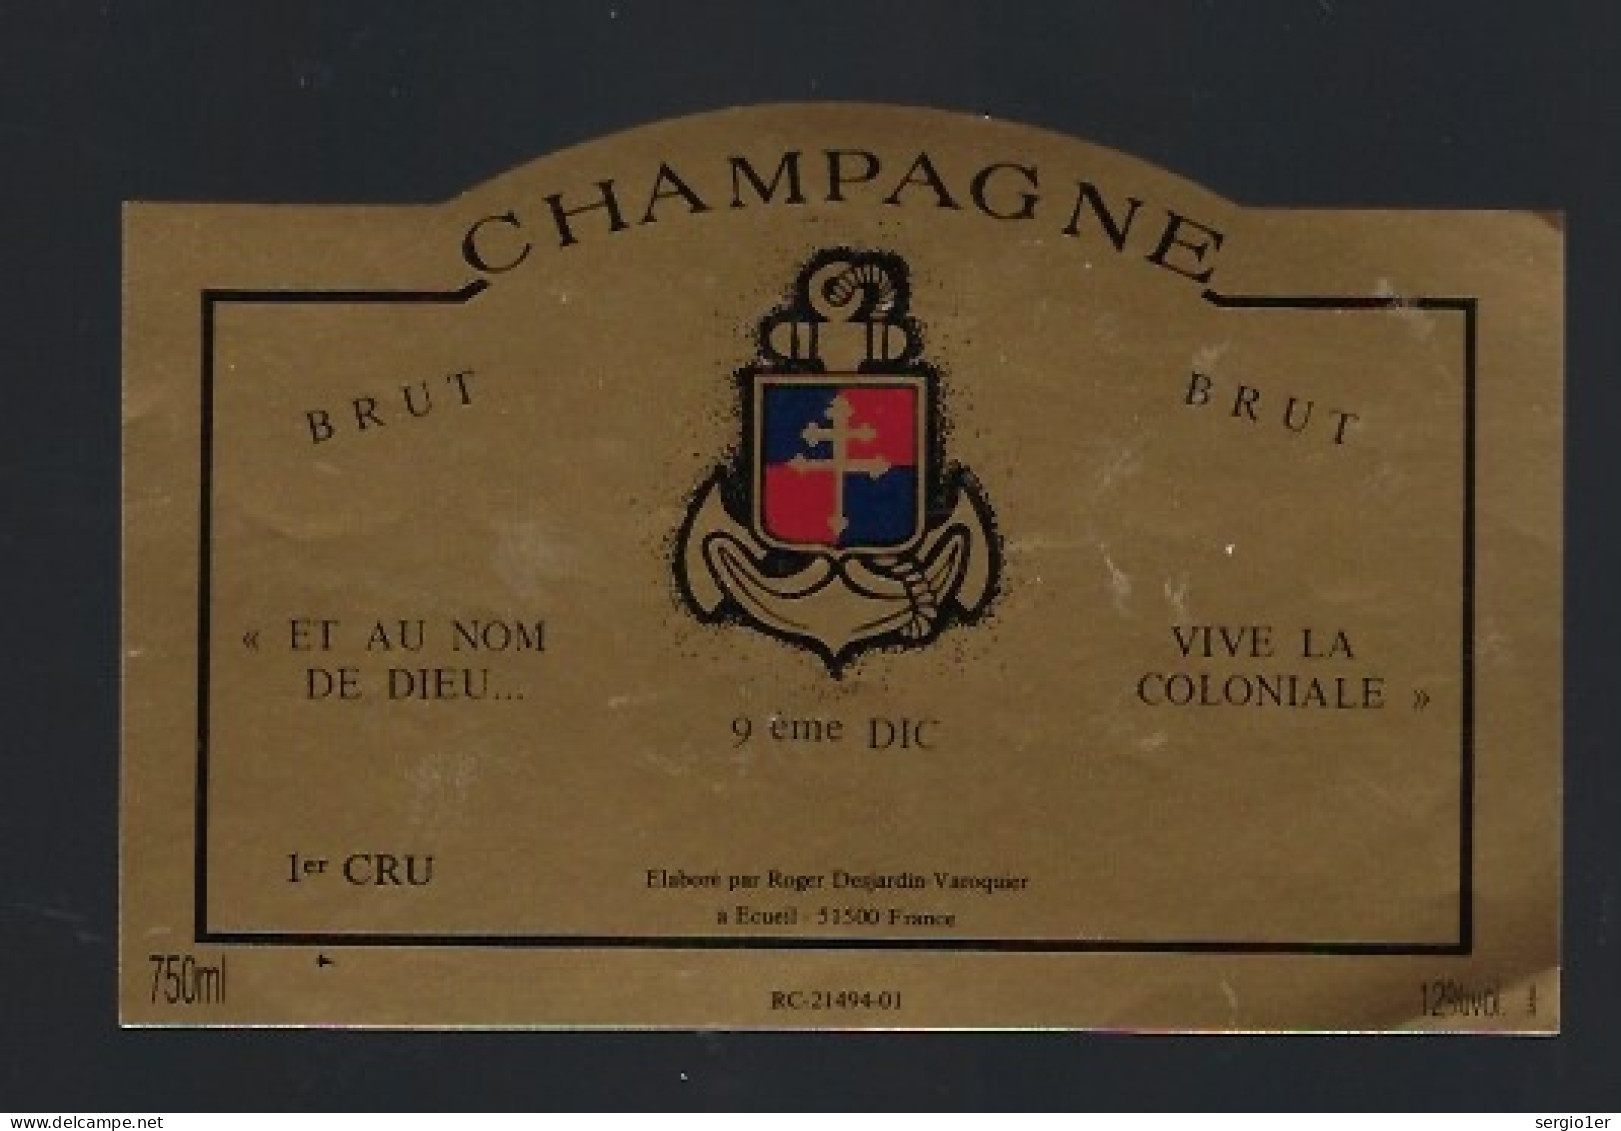 Etiquette Champagne Brut Et Au Nom De Dieu...vive La Coloniale 9ème DIC Roger Dejardin Varoquier  Marne 51 " Militaire" - Champagner